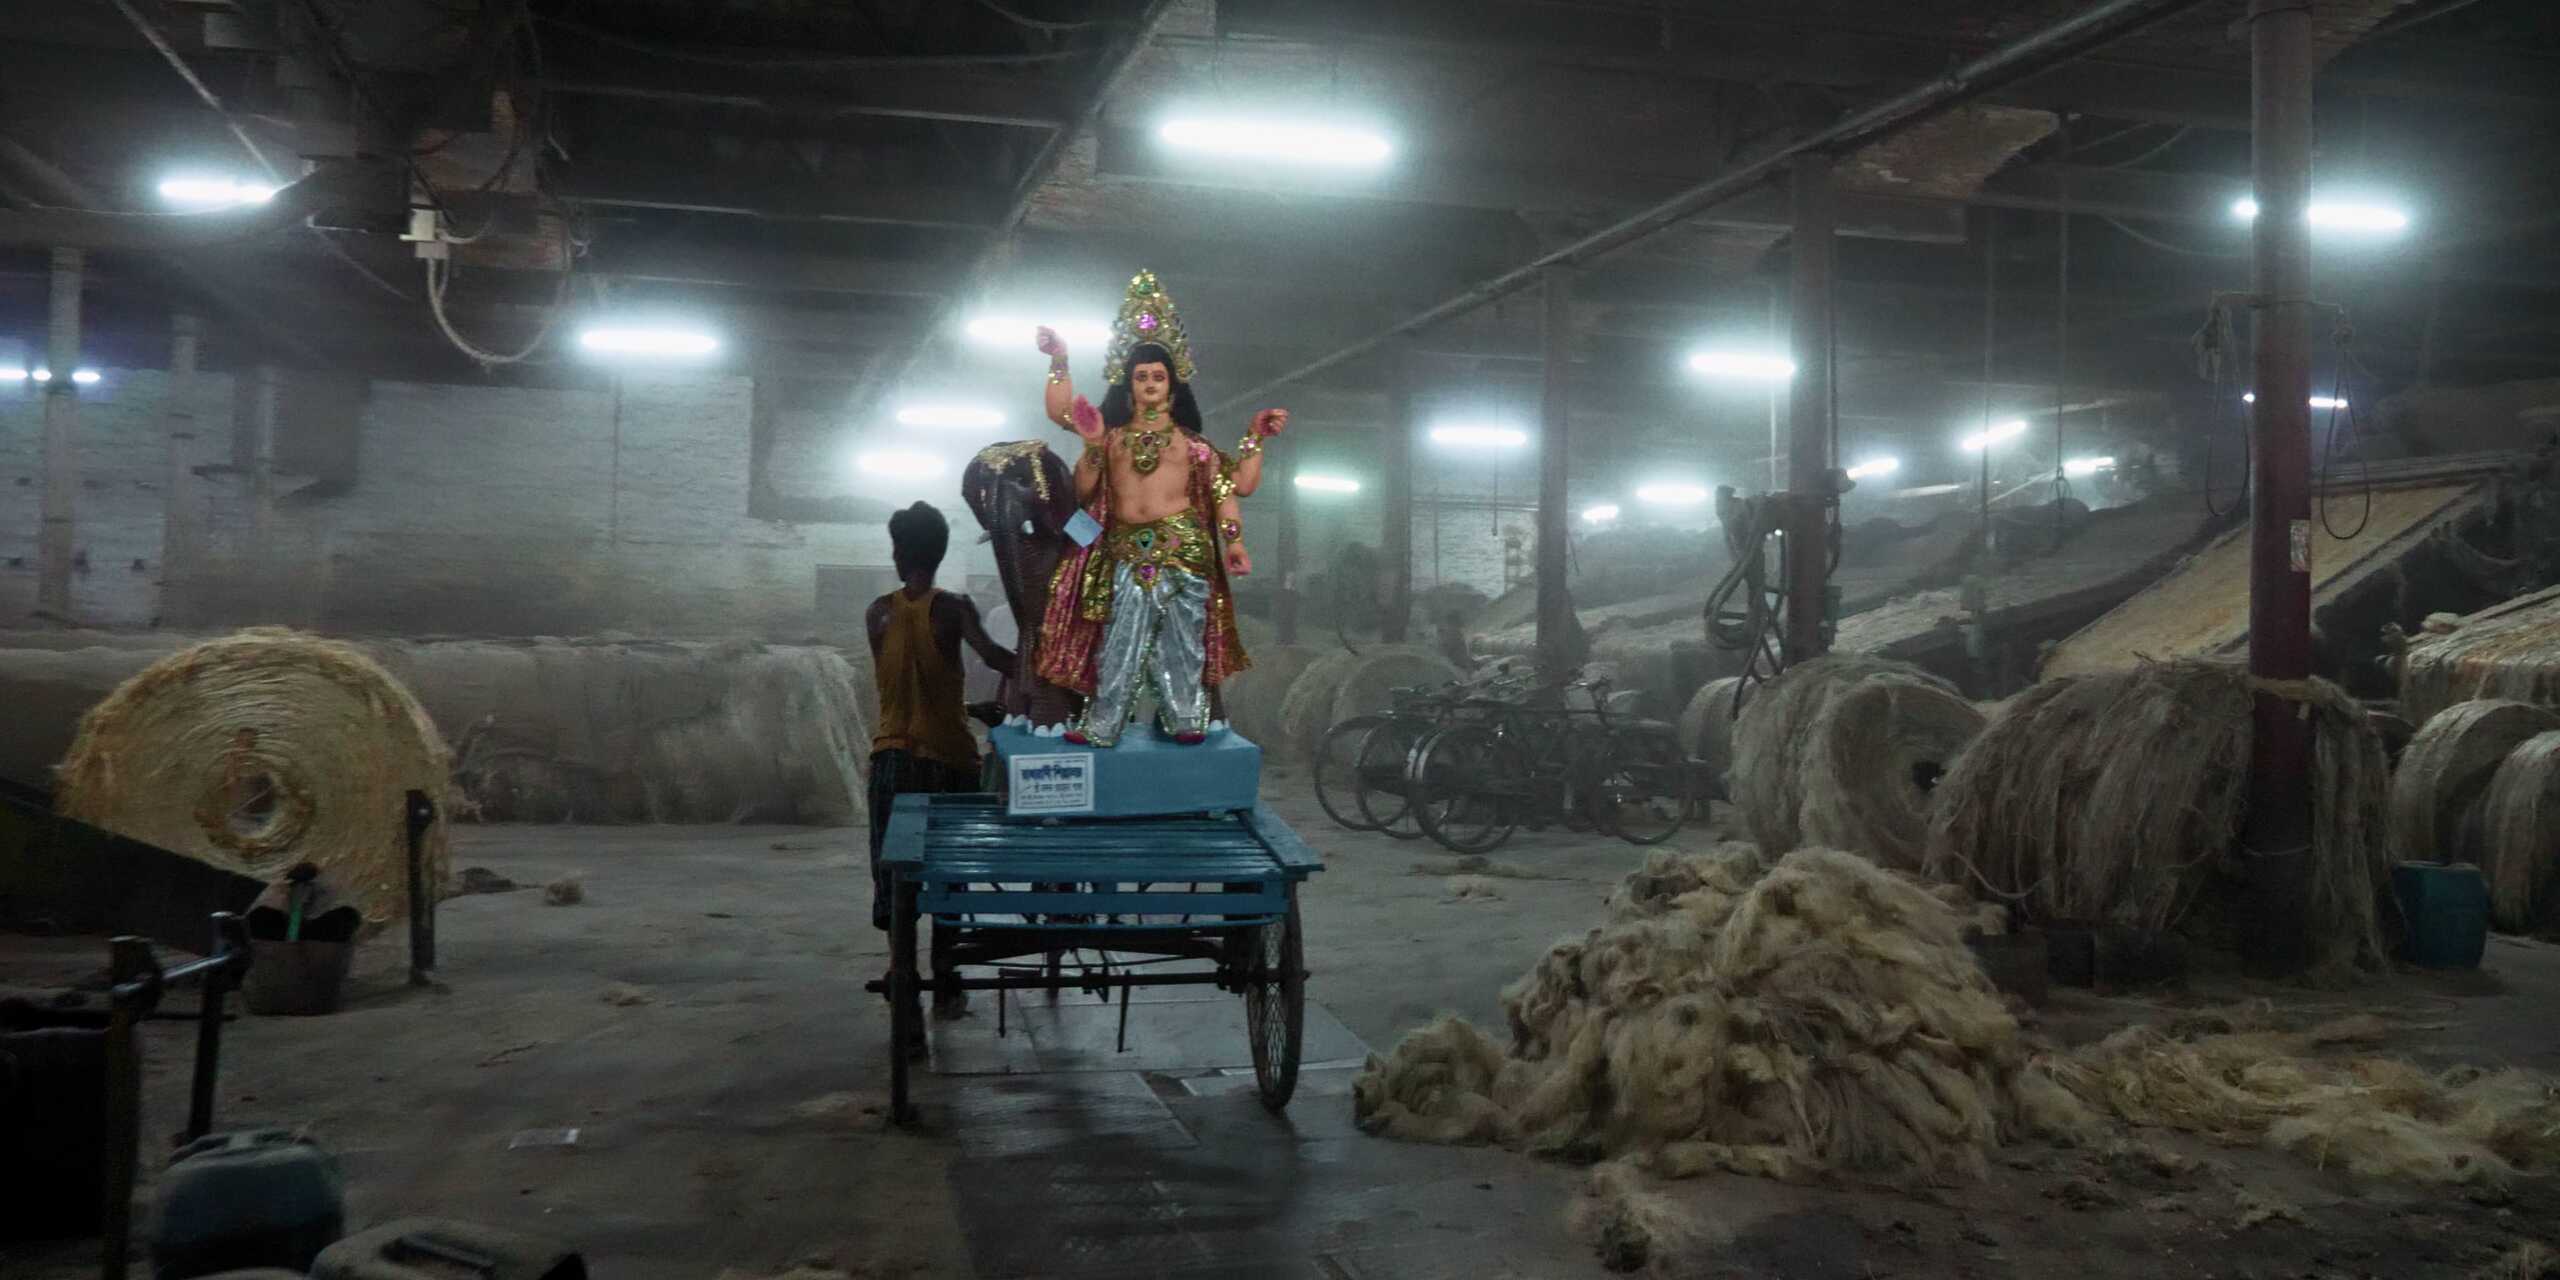 ein Arbeiter läuft neben seinem Gefährt in eine Jutefabrik hinein, auf dem Anhänger eine indische Göttinenfigur, große Juteballen an den Seiten